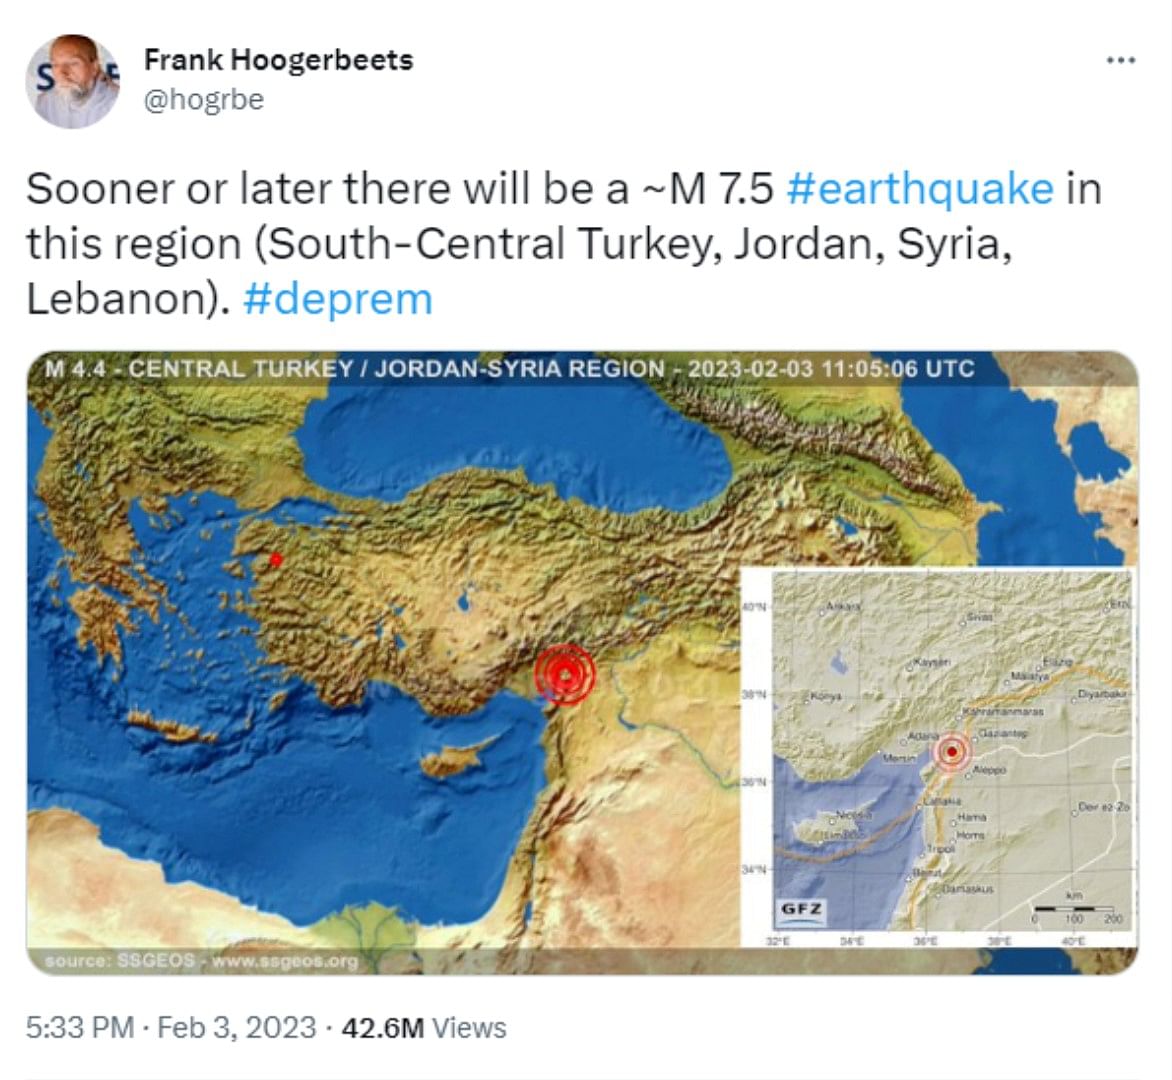 तुर्किए-सीरिया भूकंप: इस शोधकर्ता ने पहले ही कर दी थी भविष्यवाणी